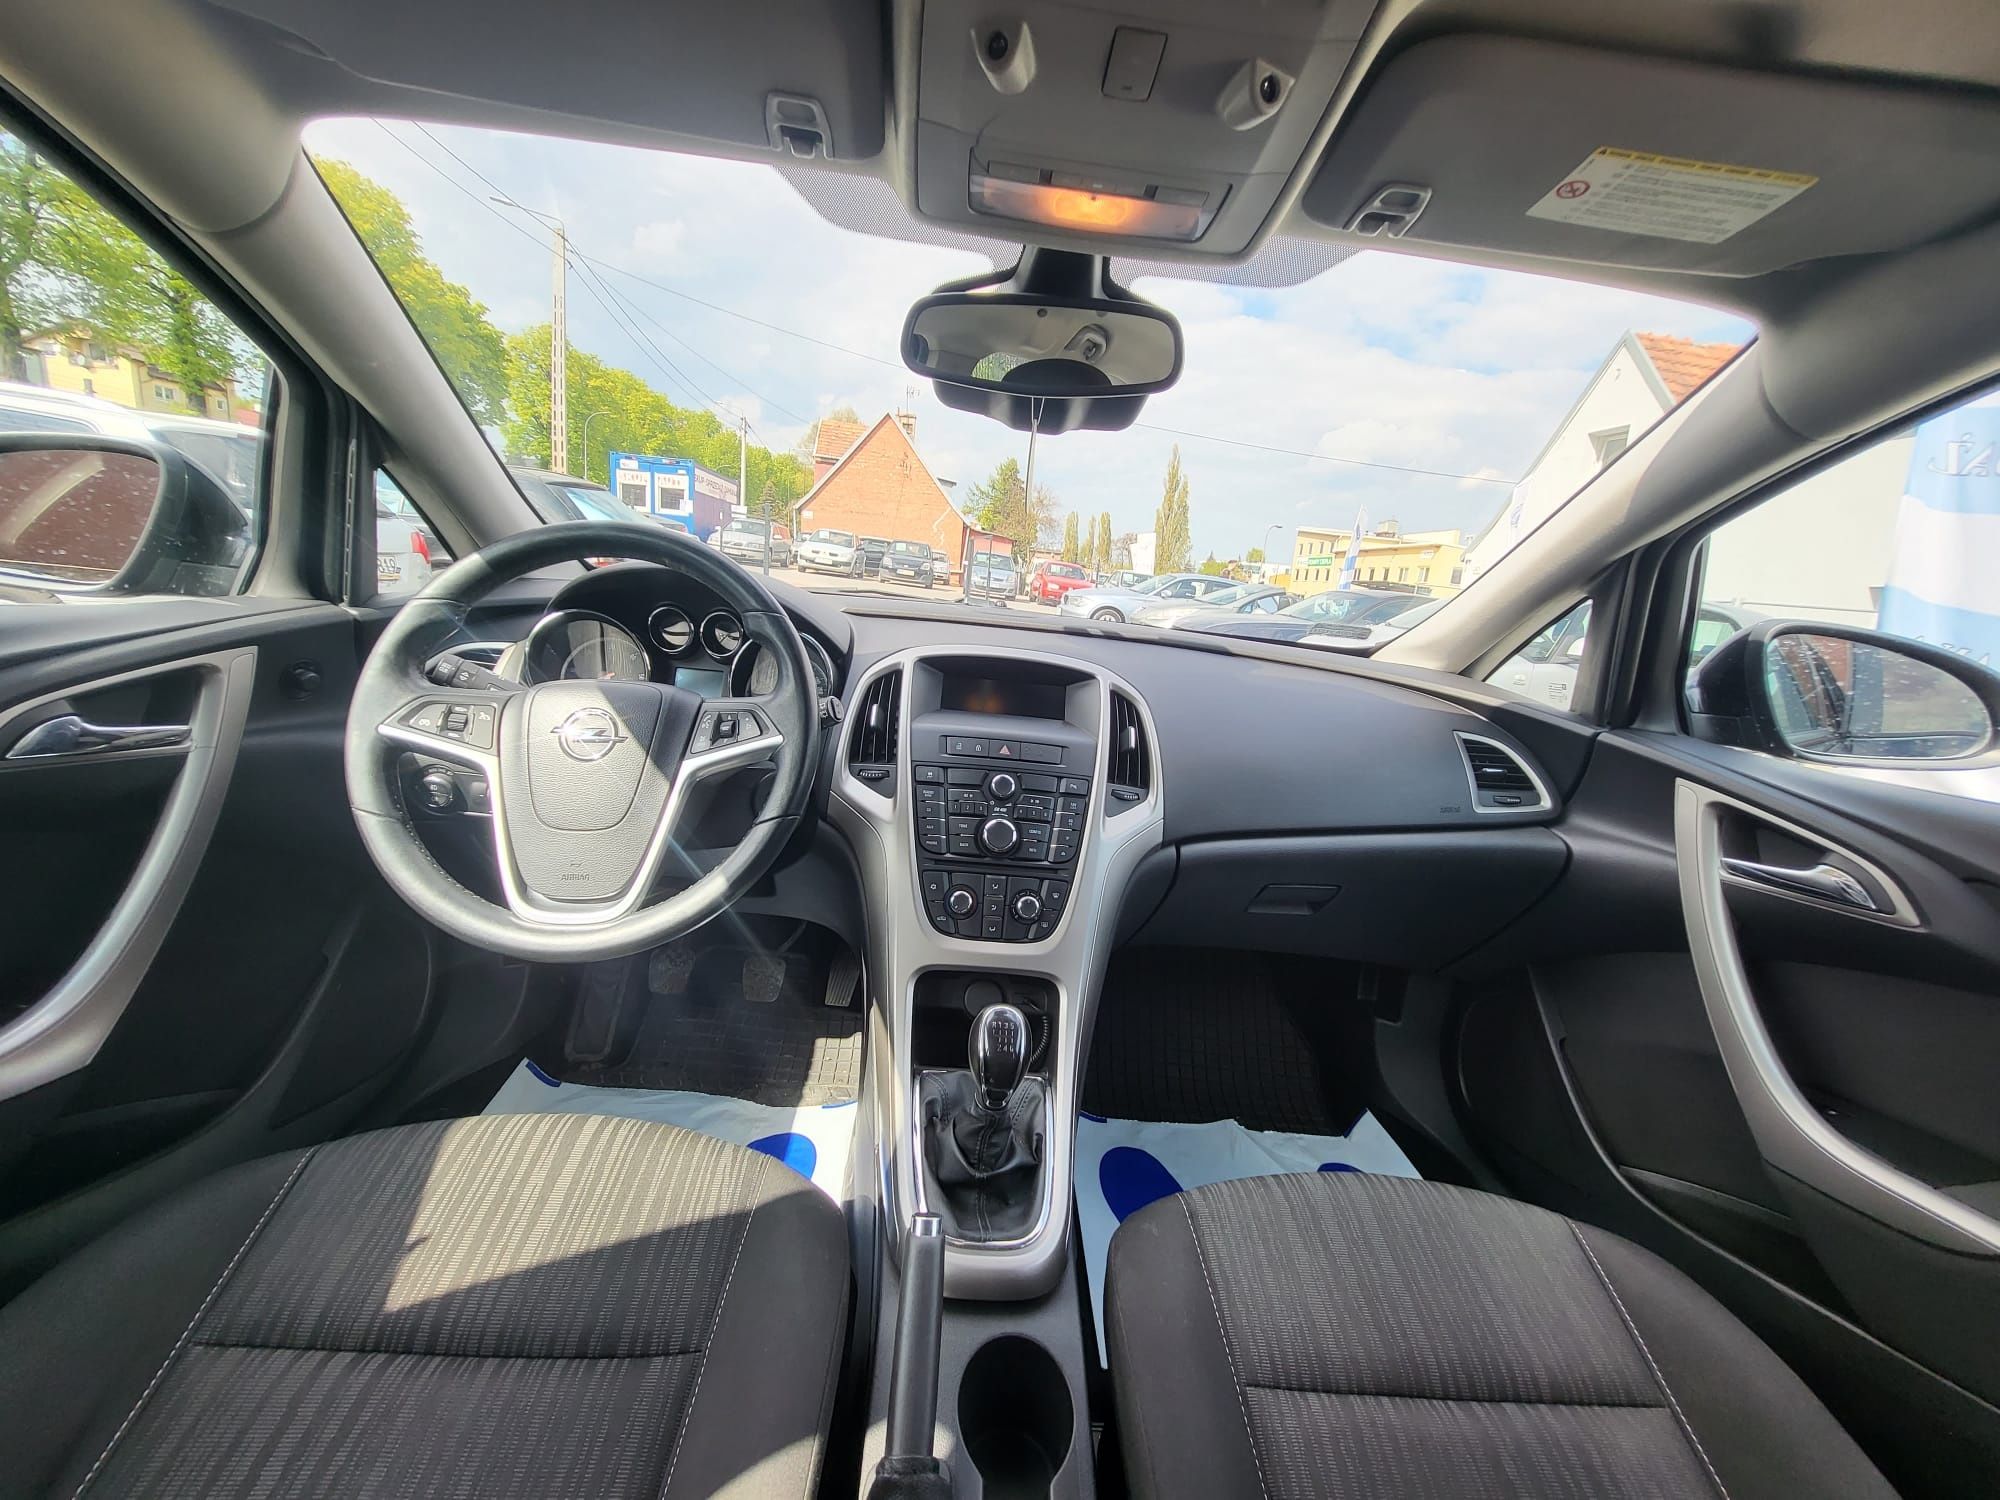 Opel Astra J 1.7cdti 125km // Kombi // Serwis ASO faktury // Zamiana